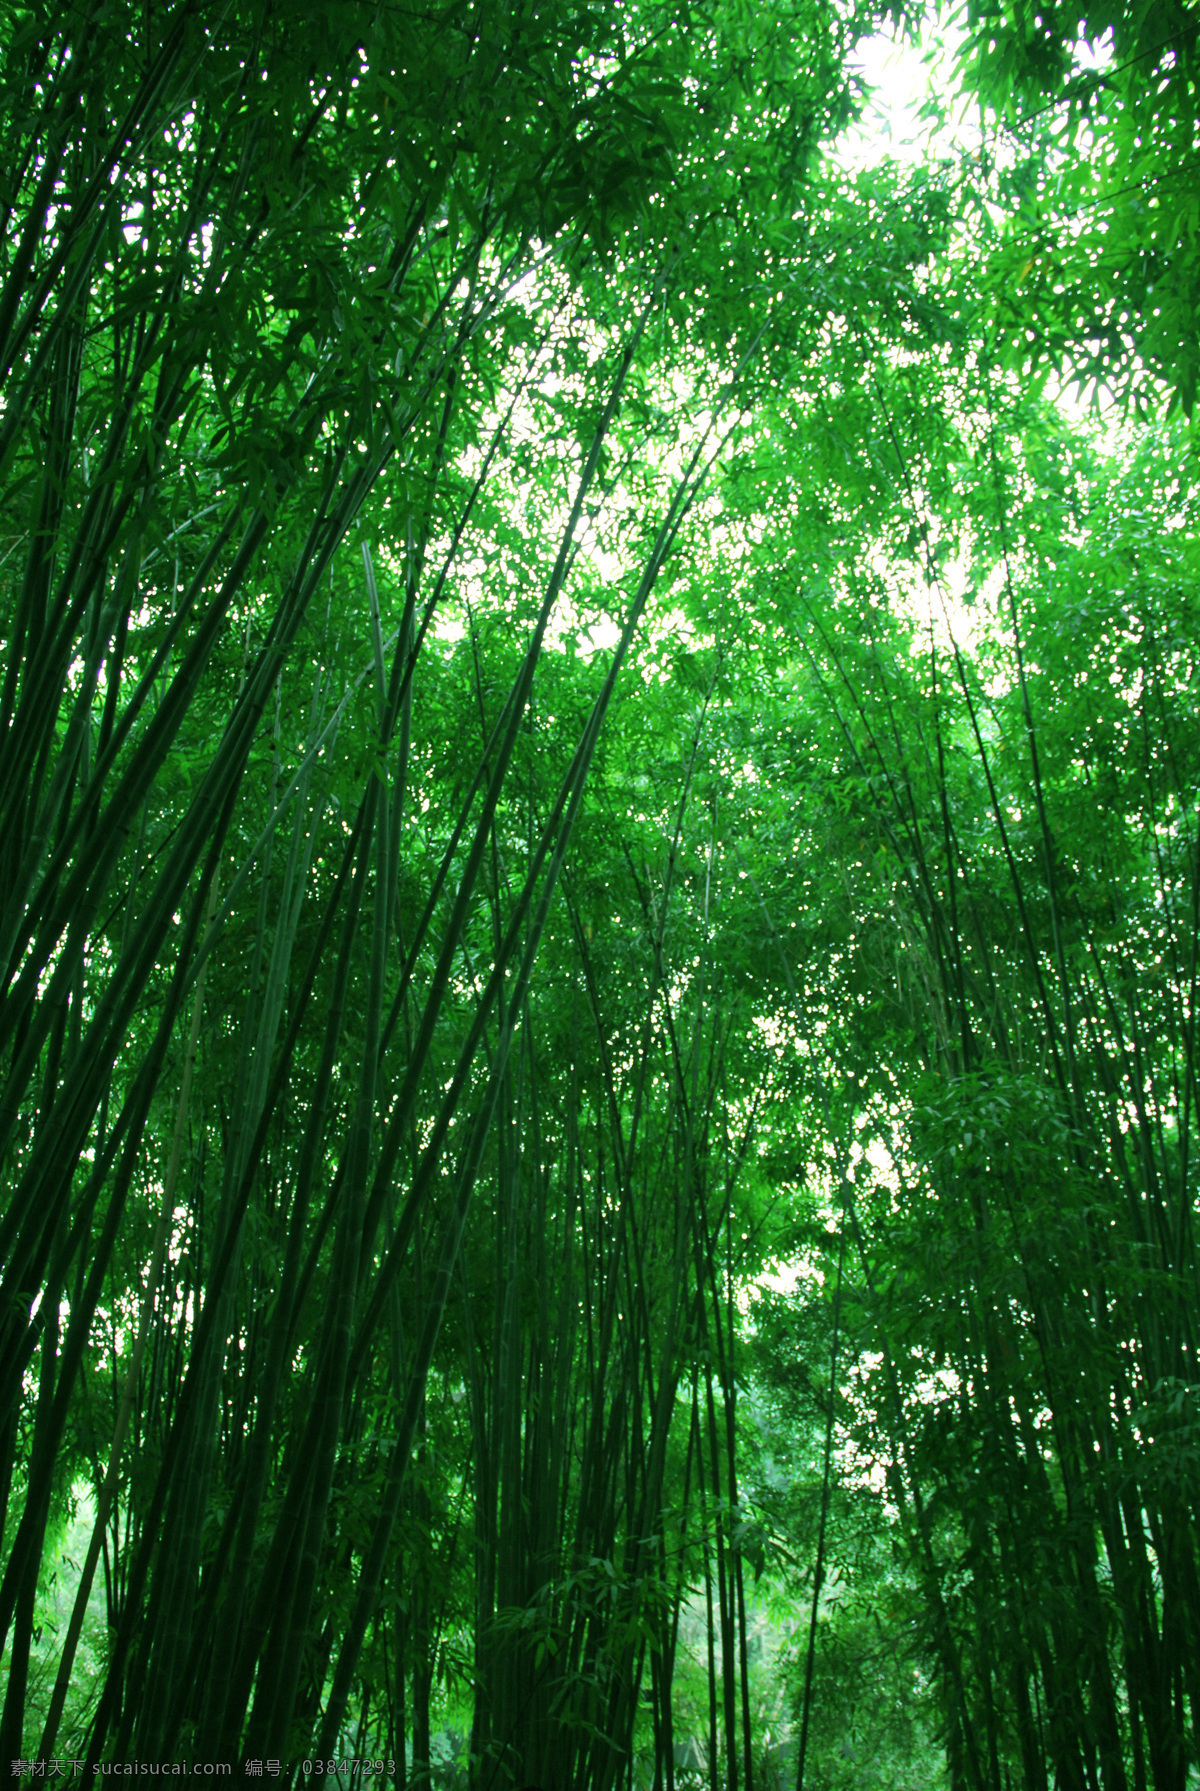 翠竹 绿色 春天 竹节 生物世界 树木树叶 翠竹摄影图 翠竹图片 绿色的竹子 竹林 竹林深处 大片竹林 竹林摄影 竹子 共享素材摄影